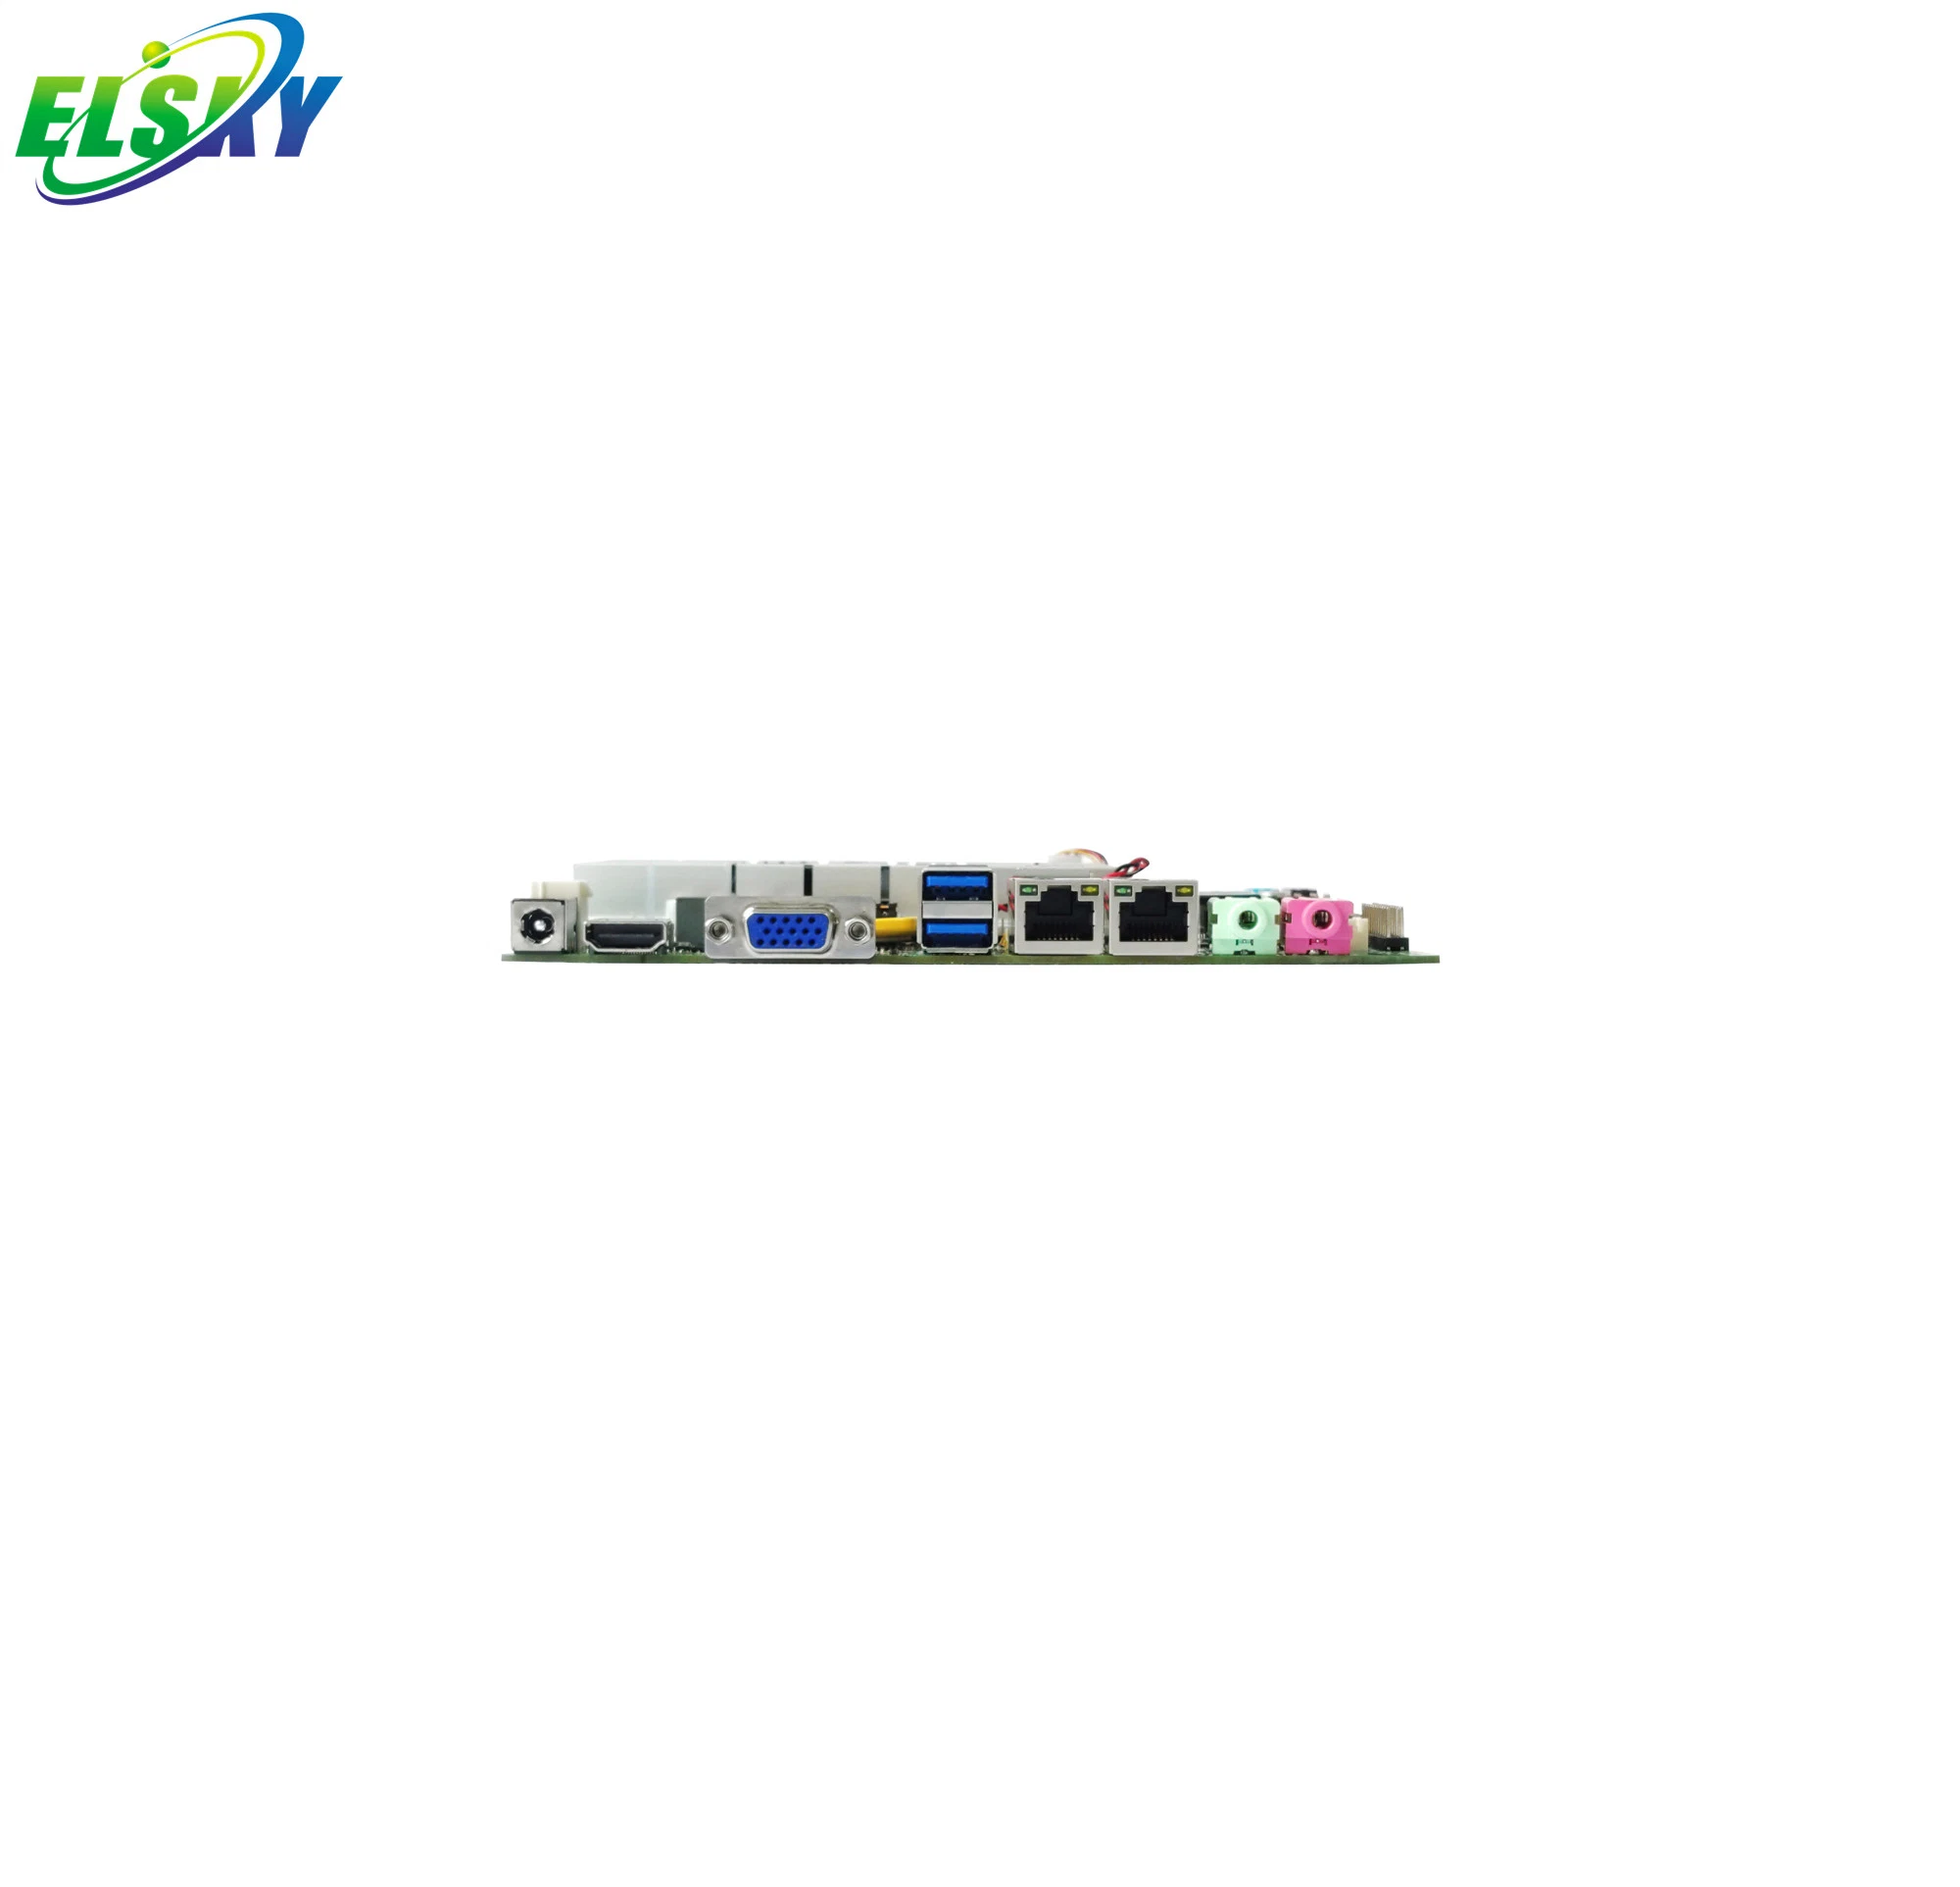 Elsky Mini Itx Motherboard 1037f Dual Cores DDR3 Board 1.8GHz 2117u DC 12V SATA2.0 Msata Lvds 2*RS232 COM for Industrial